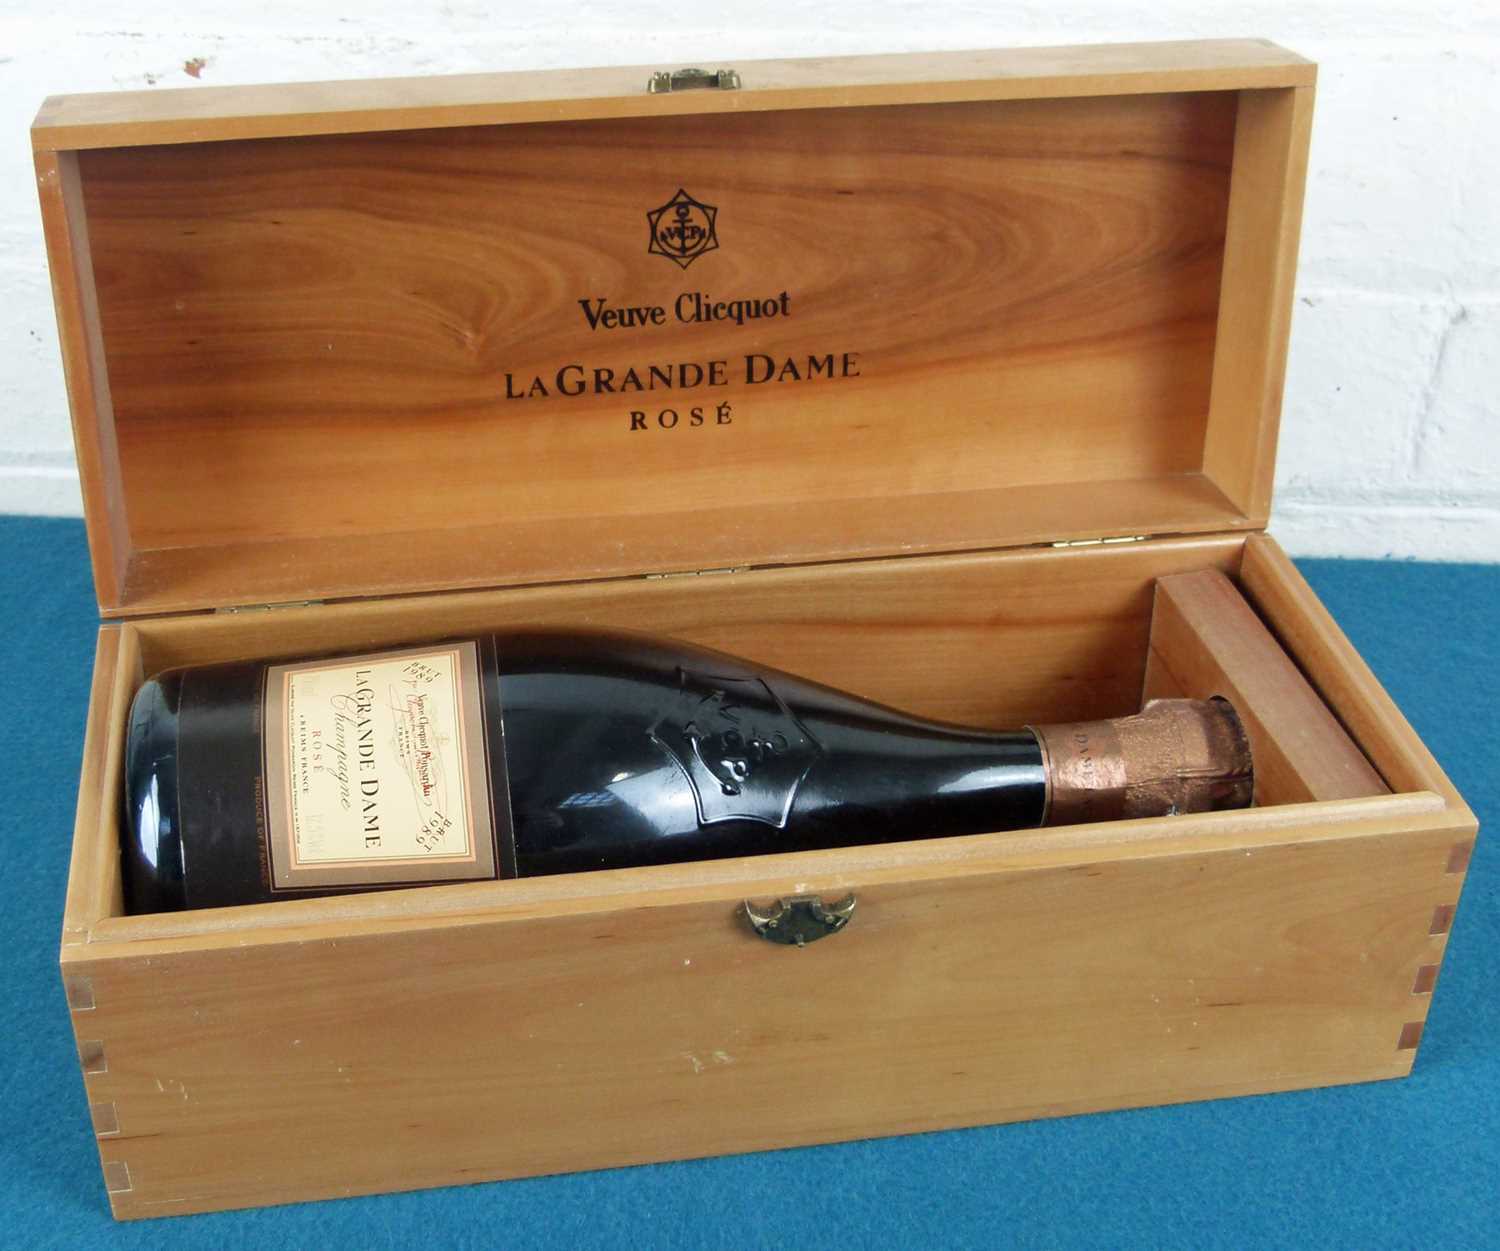 Lot 14 - 1 bottle Champagne Veuve Clicquot Grande Dame Brut Rose 1989